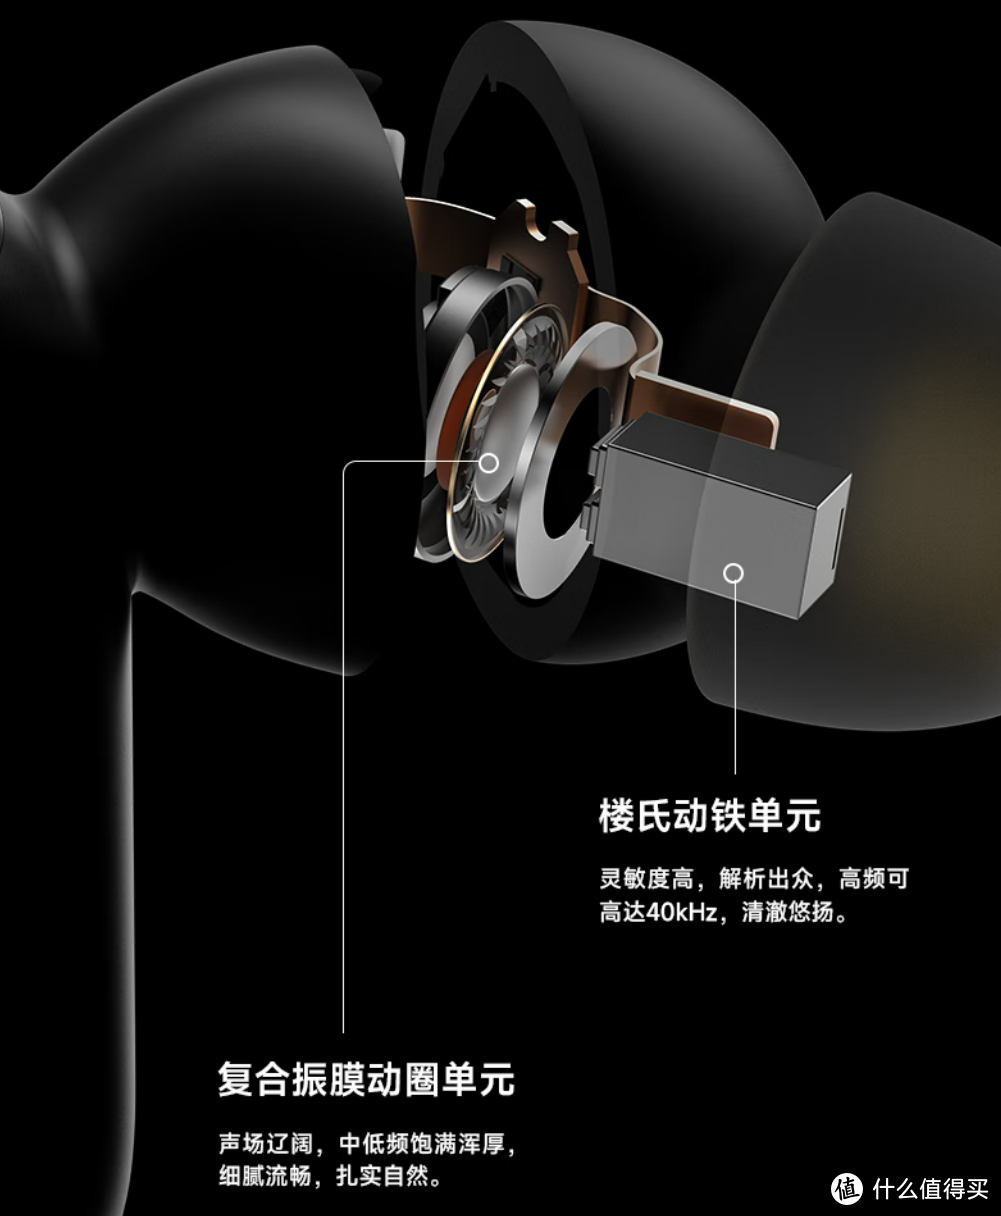 漫步者NeoBuds Pro 2 超广域降噪旗舰耳机，更有宽度和深度的降噪，打通音质全链路，戴上它说不出有多快乐